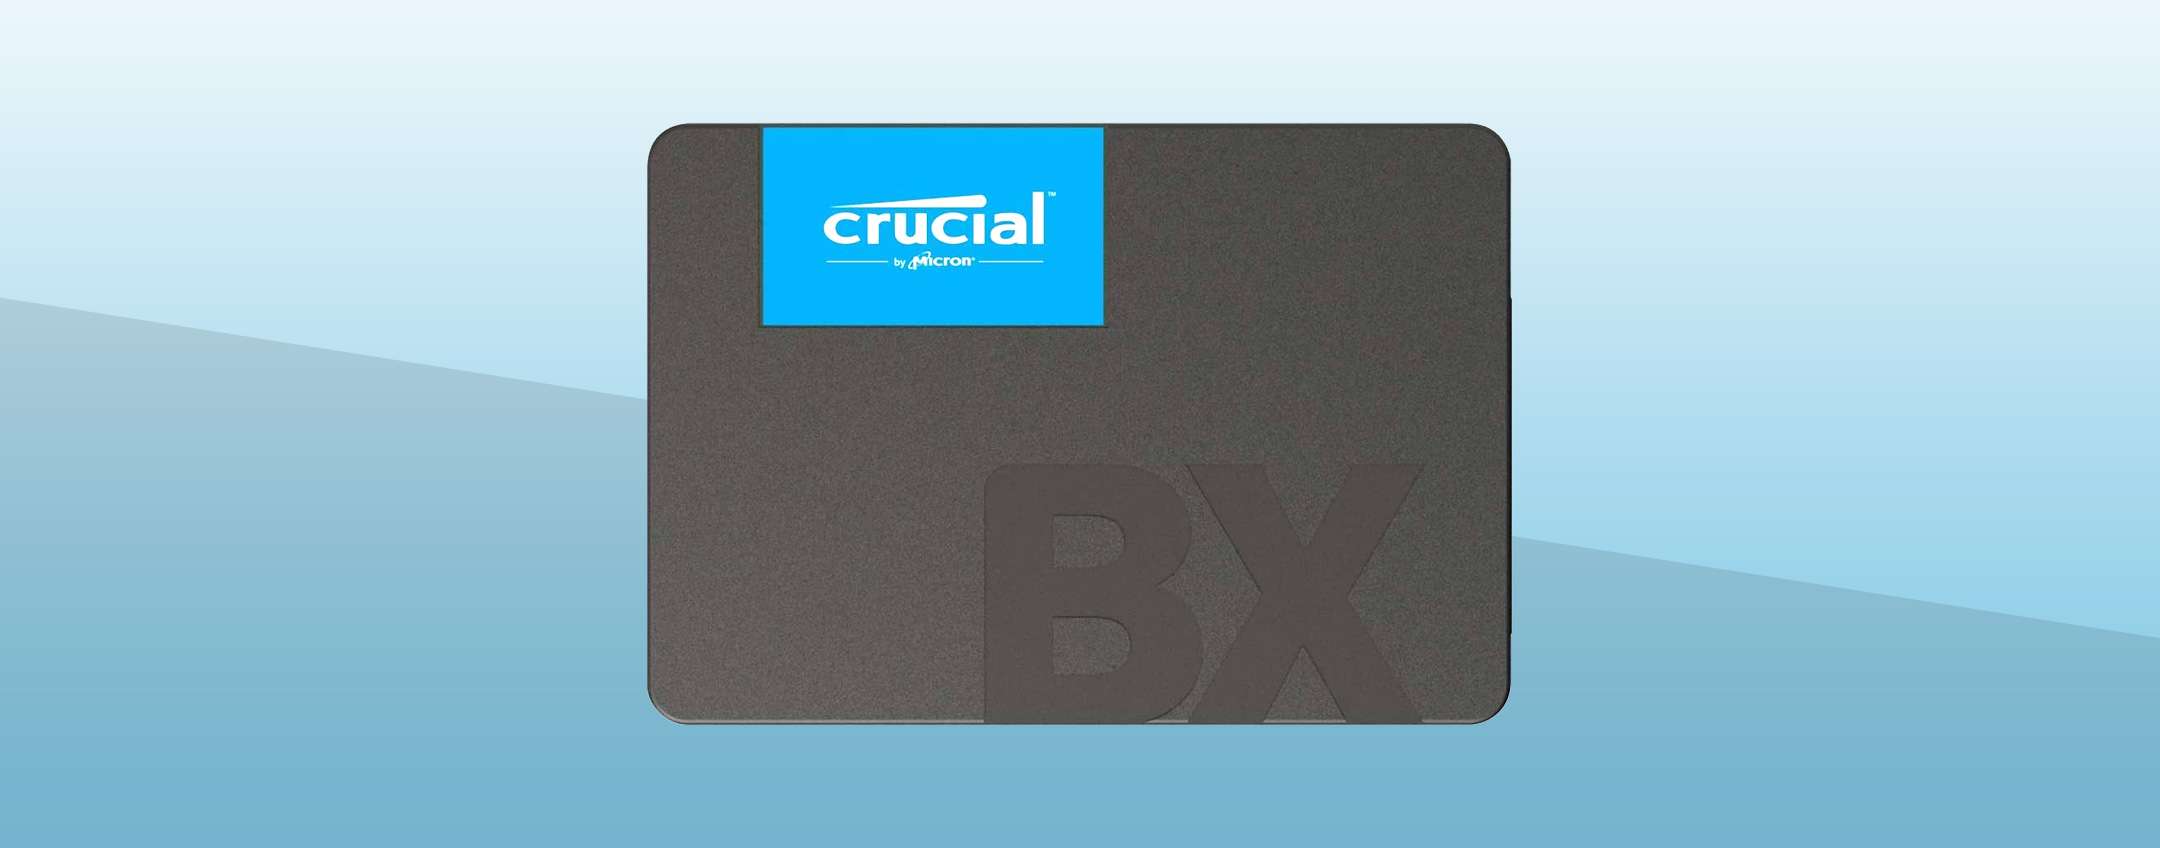 Crucial BX500